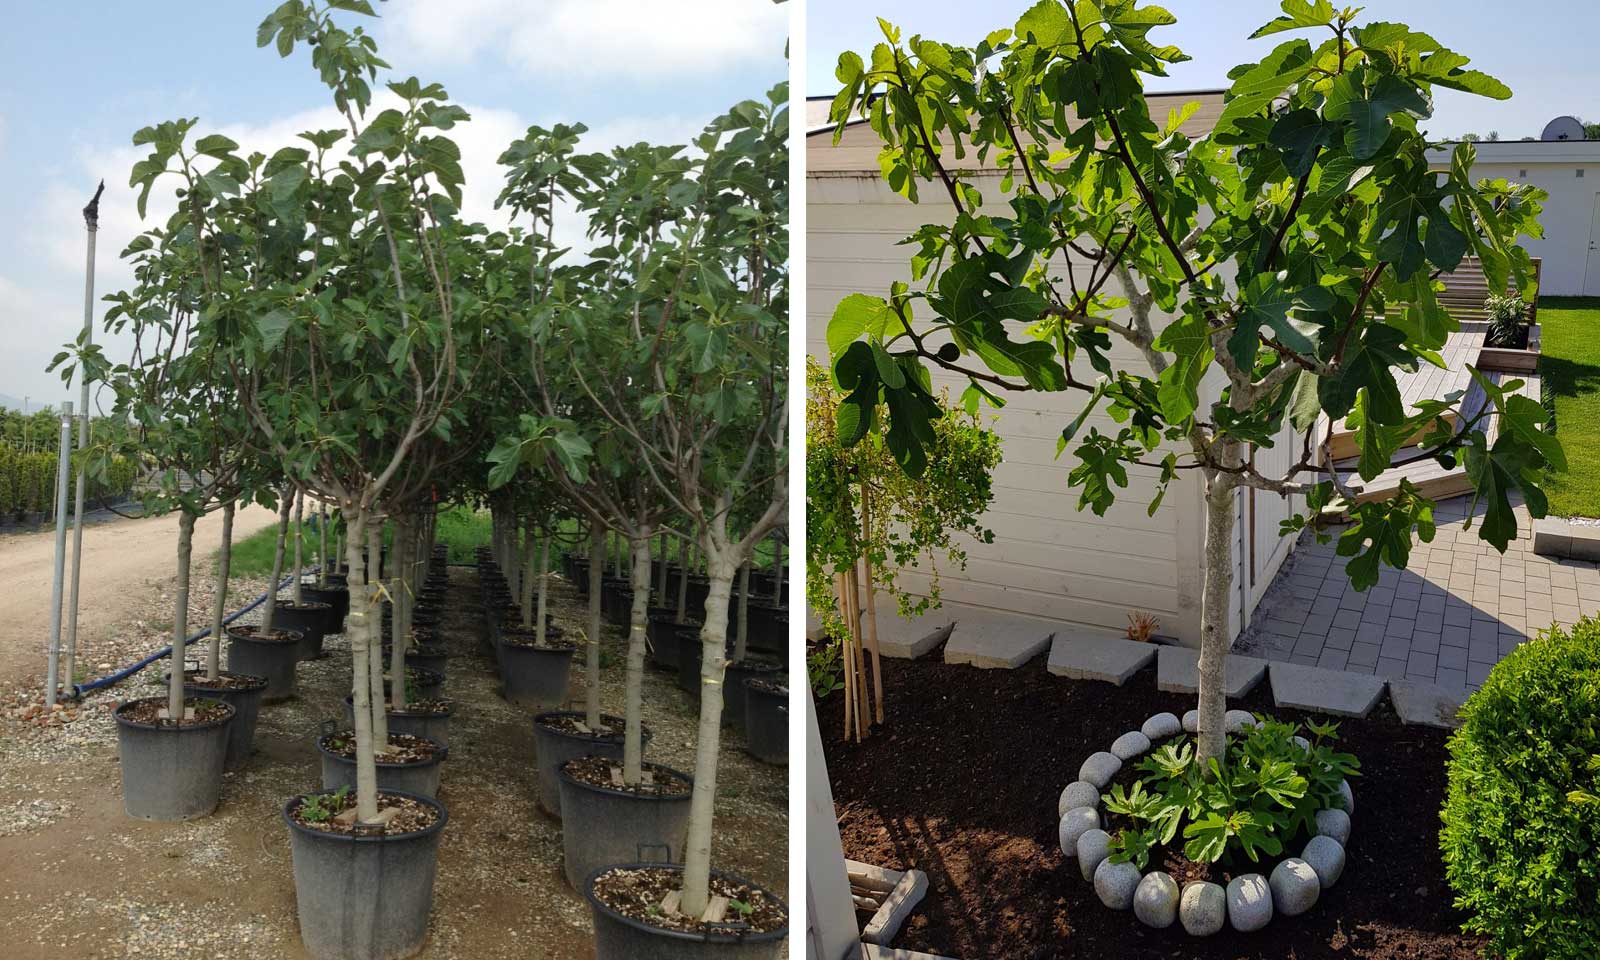 Ficus Carica (Edible Common Fig Half Standard Garden Plants Online